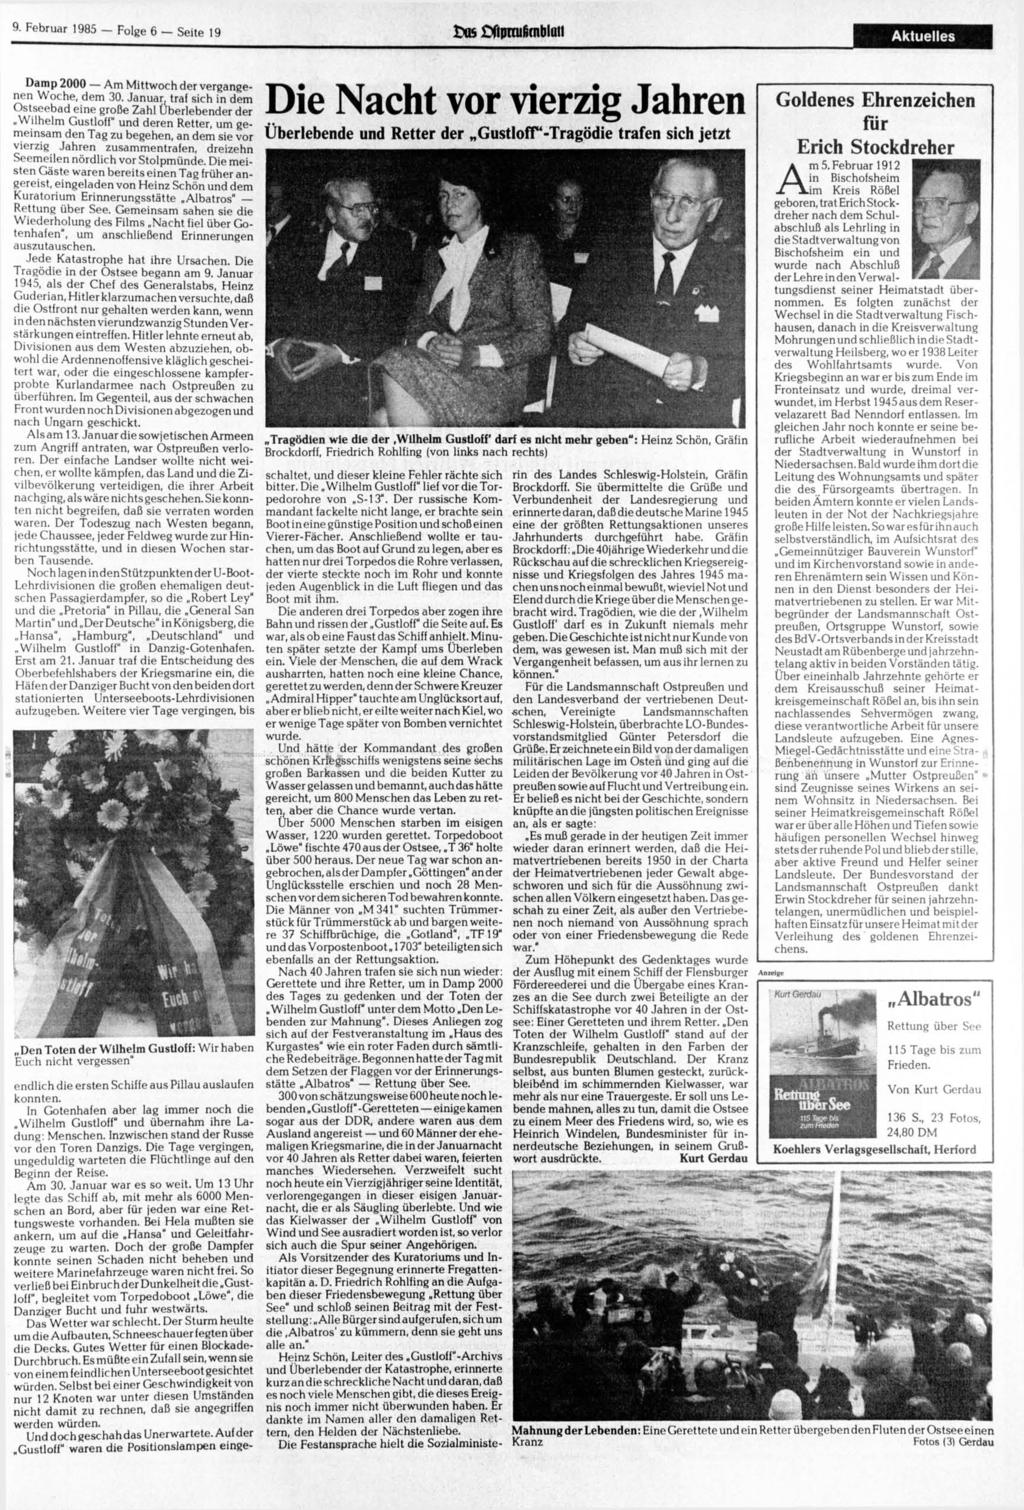 9. 1985 Folge 6 Seite 19 SMS Cfipnufirnbiuti Aktuelles Damp 2000 Am Mittwoch der vergangenen Woche, dem 30.